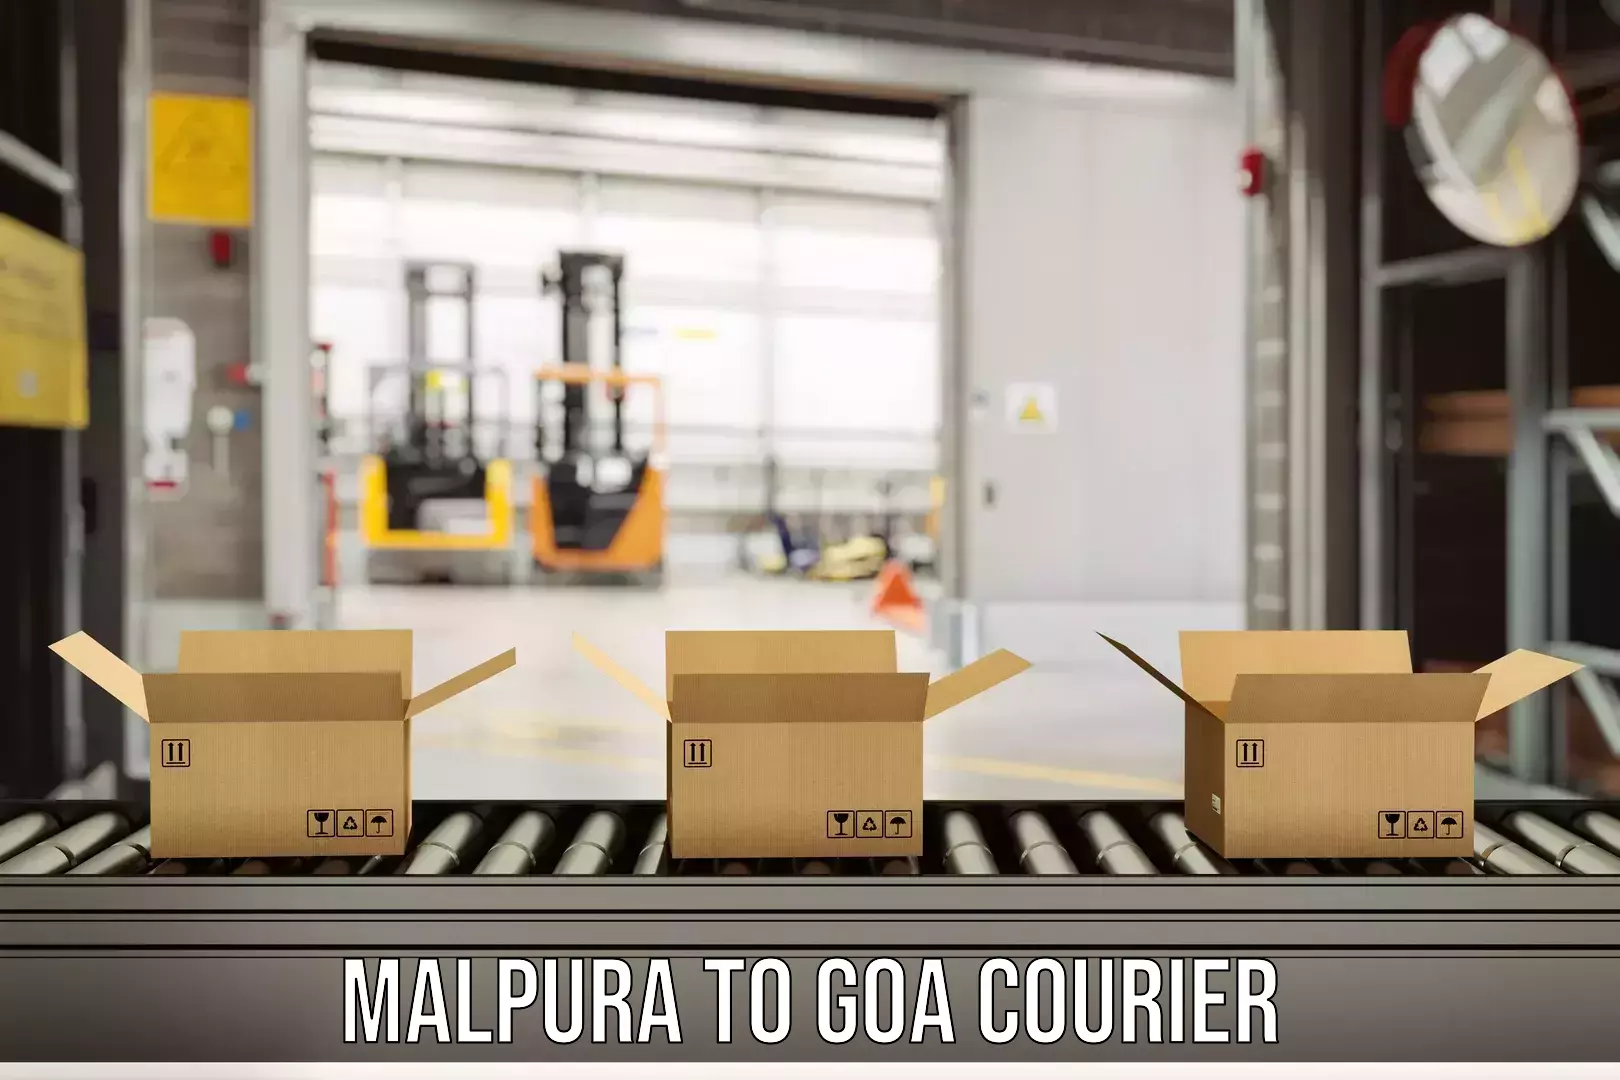 Sustainable delivery practices Malpura to Goa